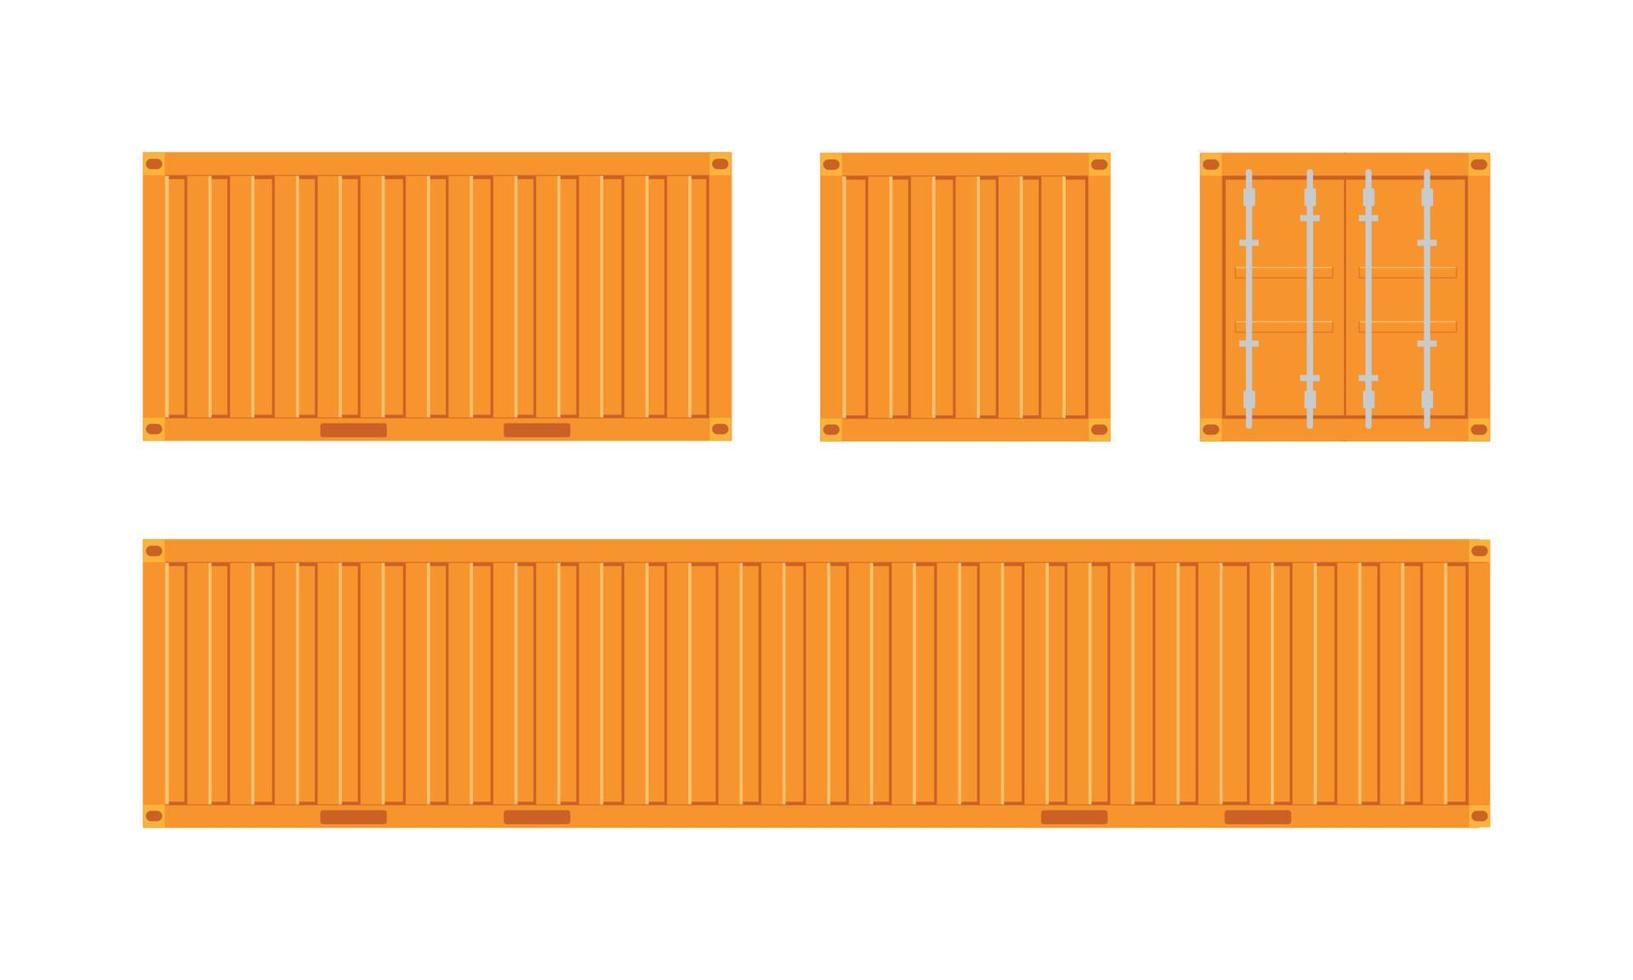 oranje verzending vrachtcontainer voor logistiek en transport geïsoleerd op een witte achtergrond vectorillustratie vector